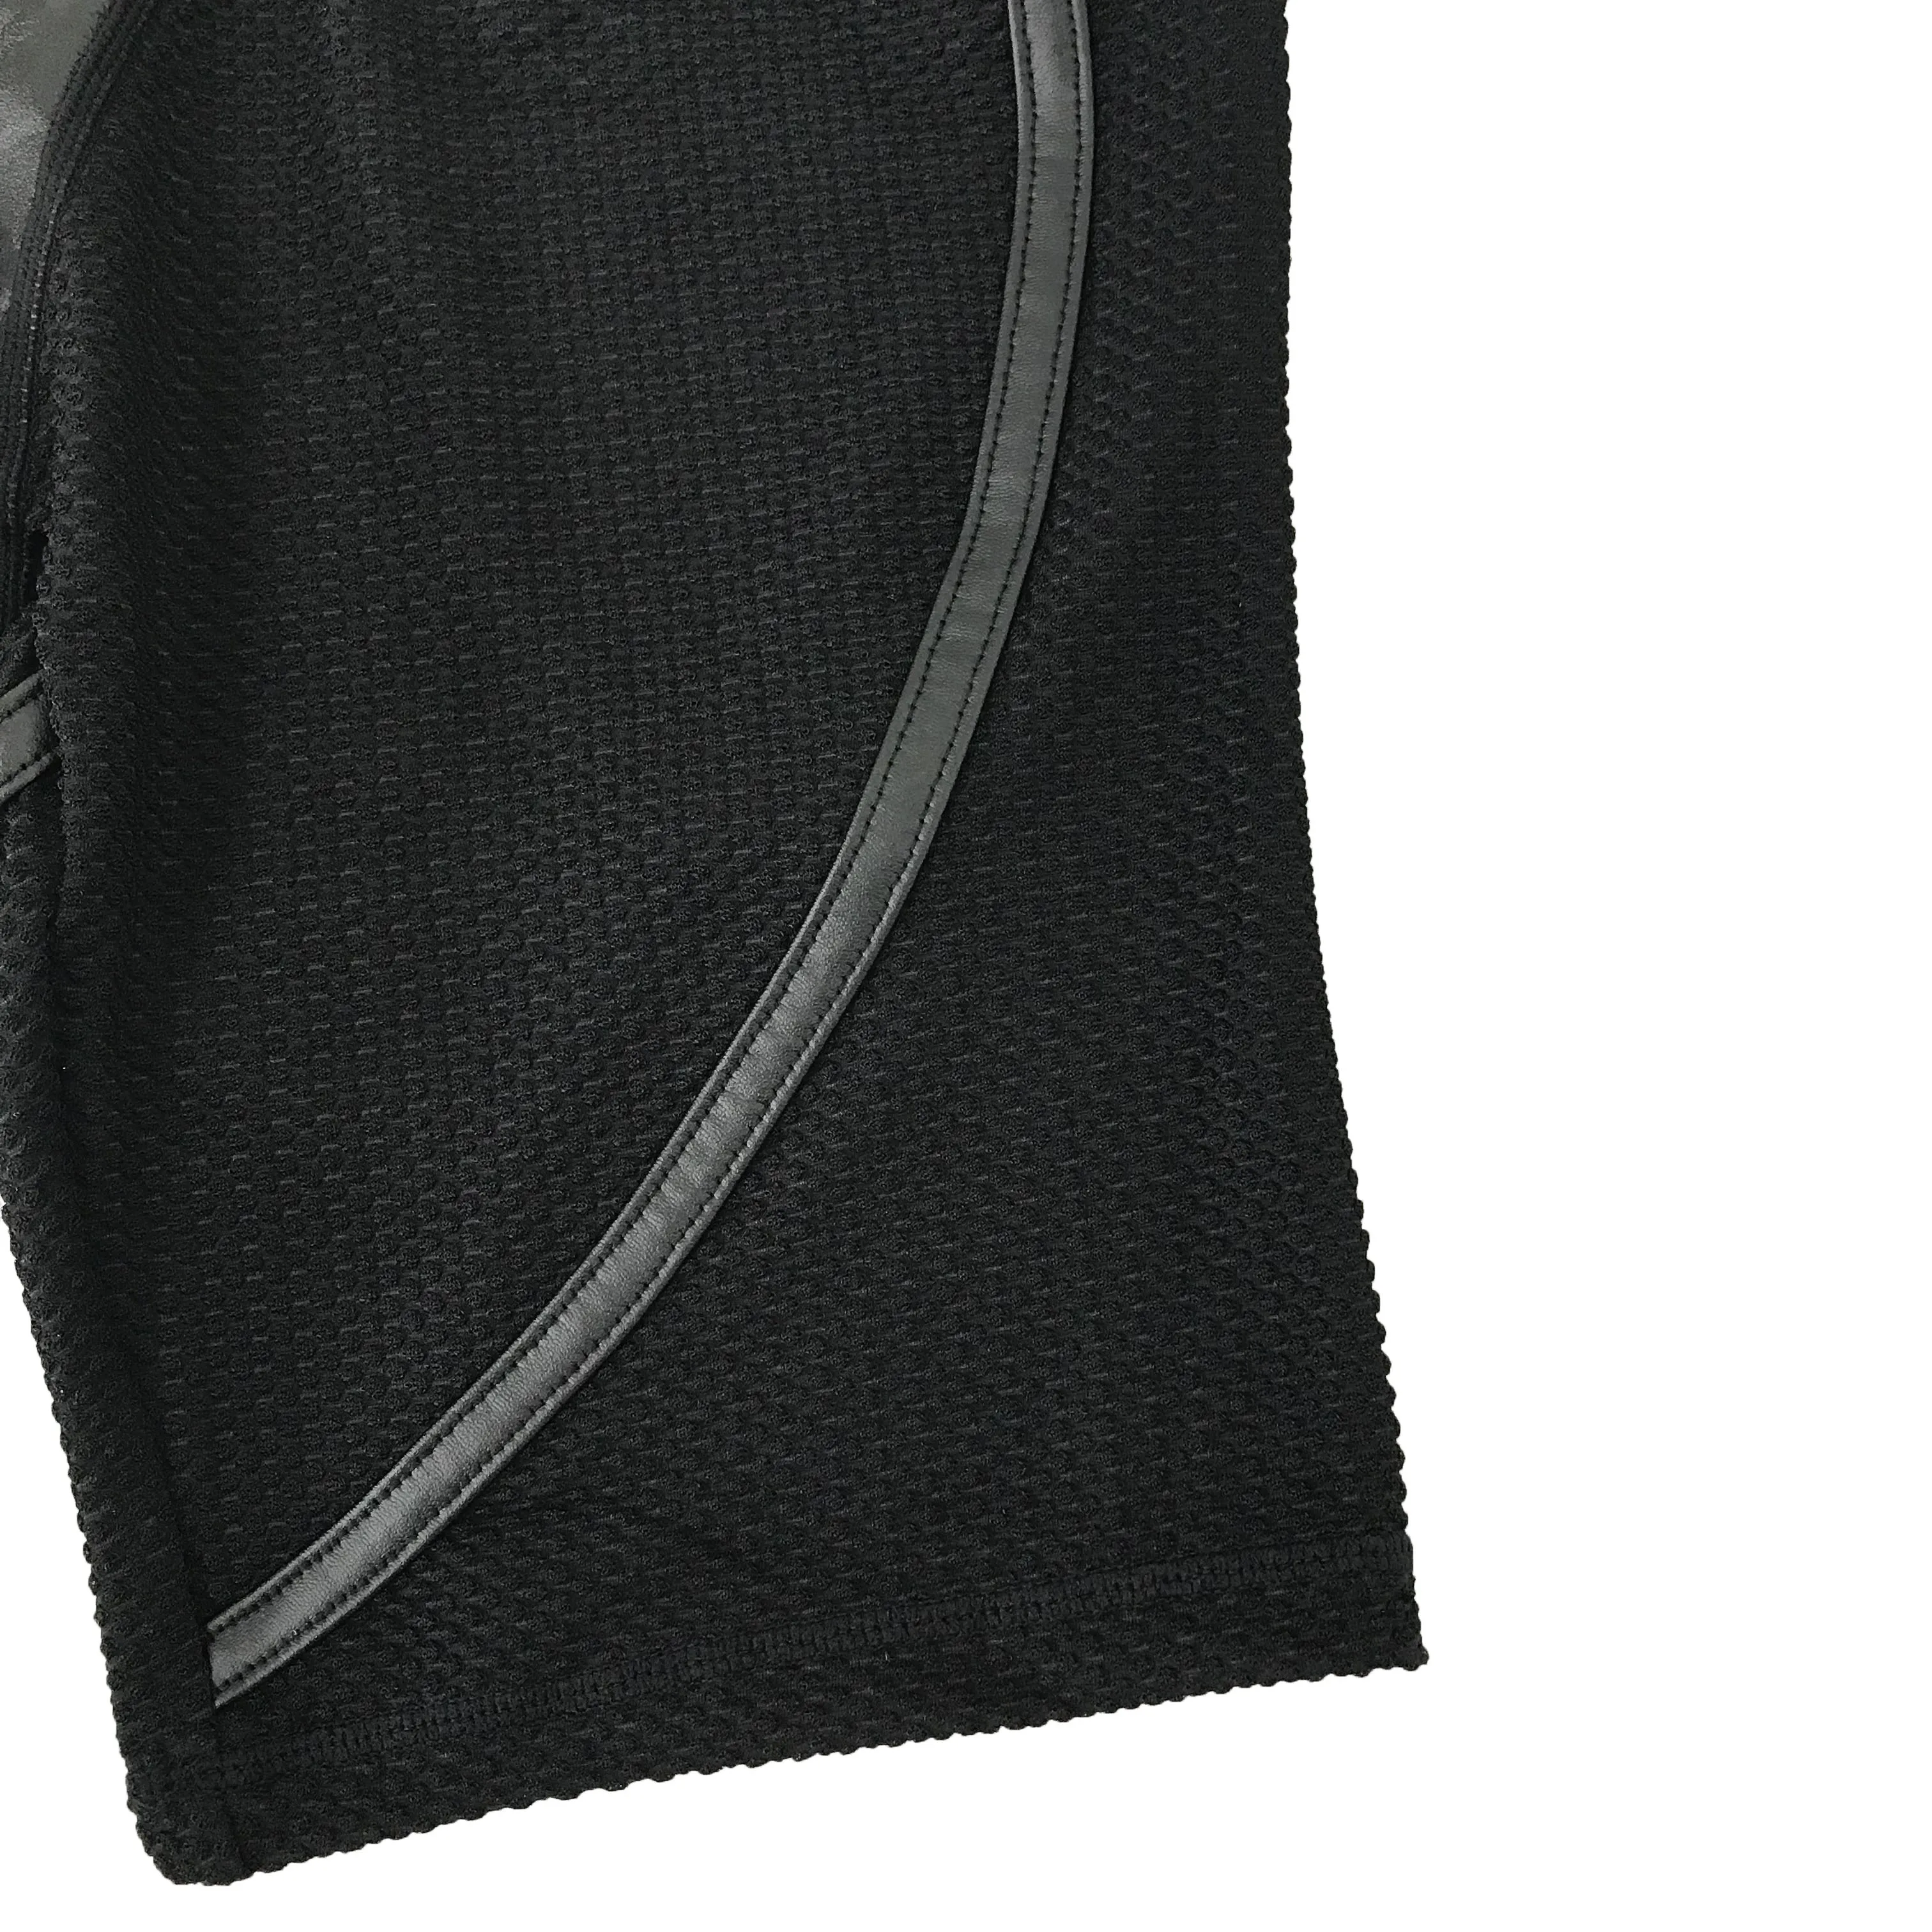 Мягкий черный Фитнес шорты для бега Для женщин с высокой талией, из лоскутов спортивные шорты для тренировок кожа Треугольники для спортзала атлетики байкерские шорты